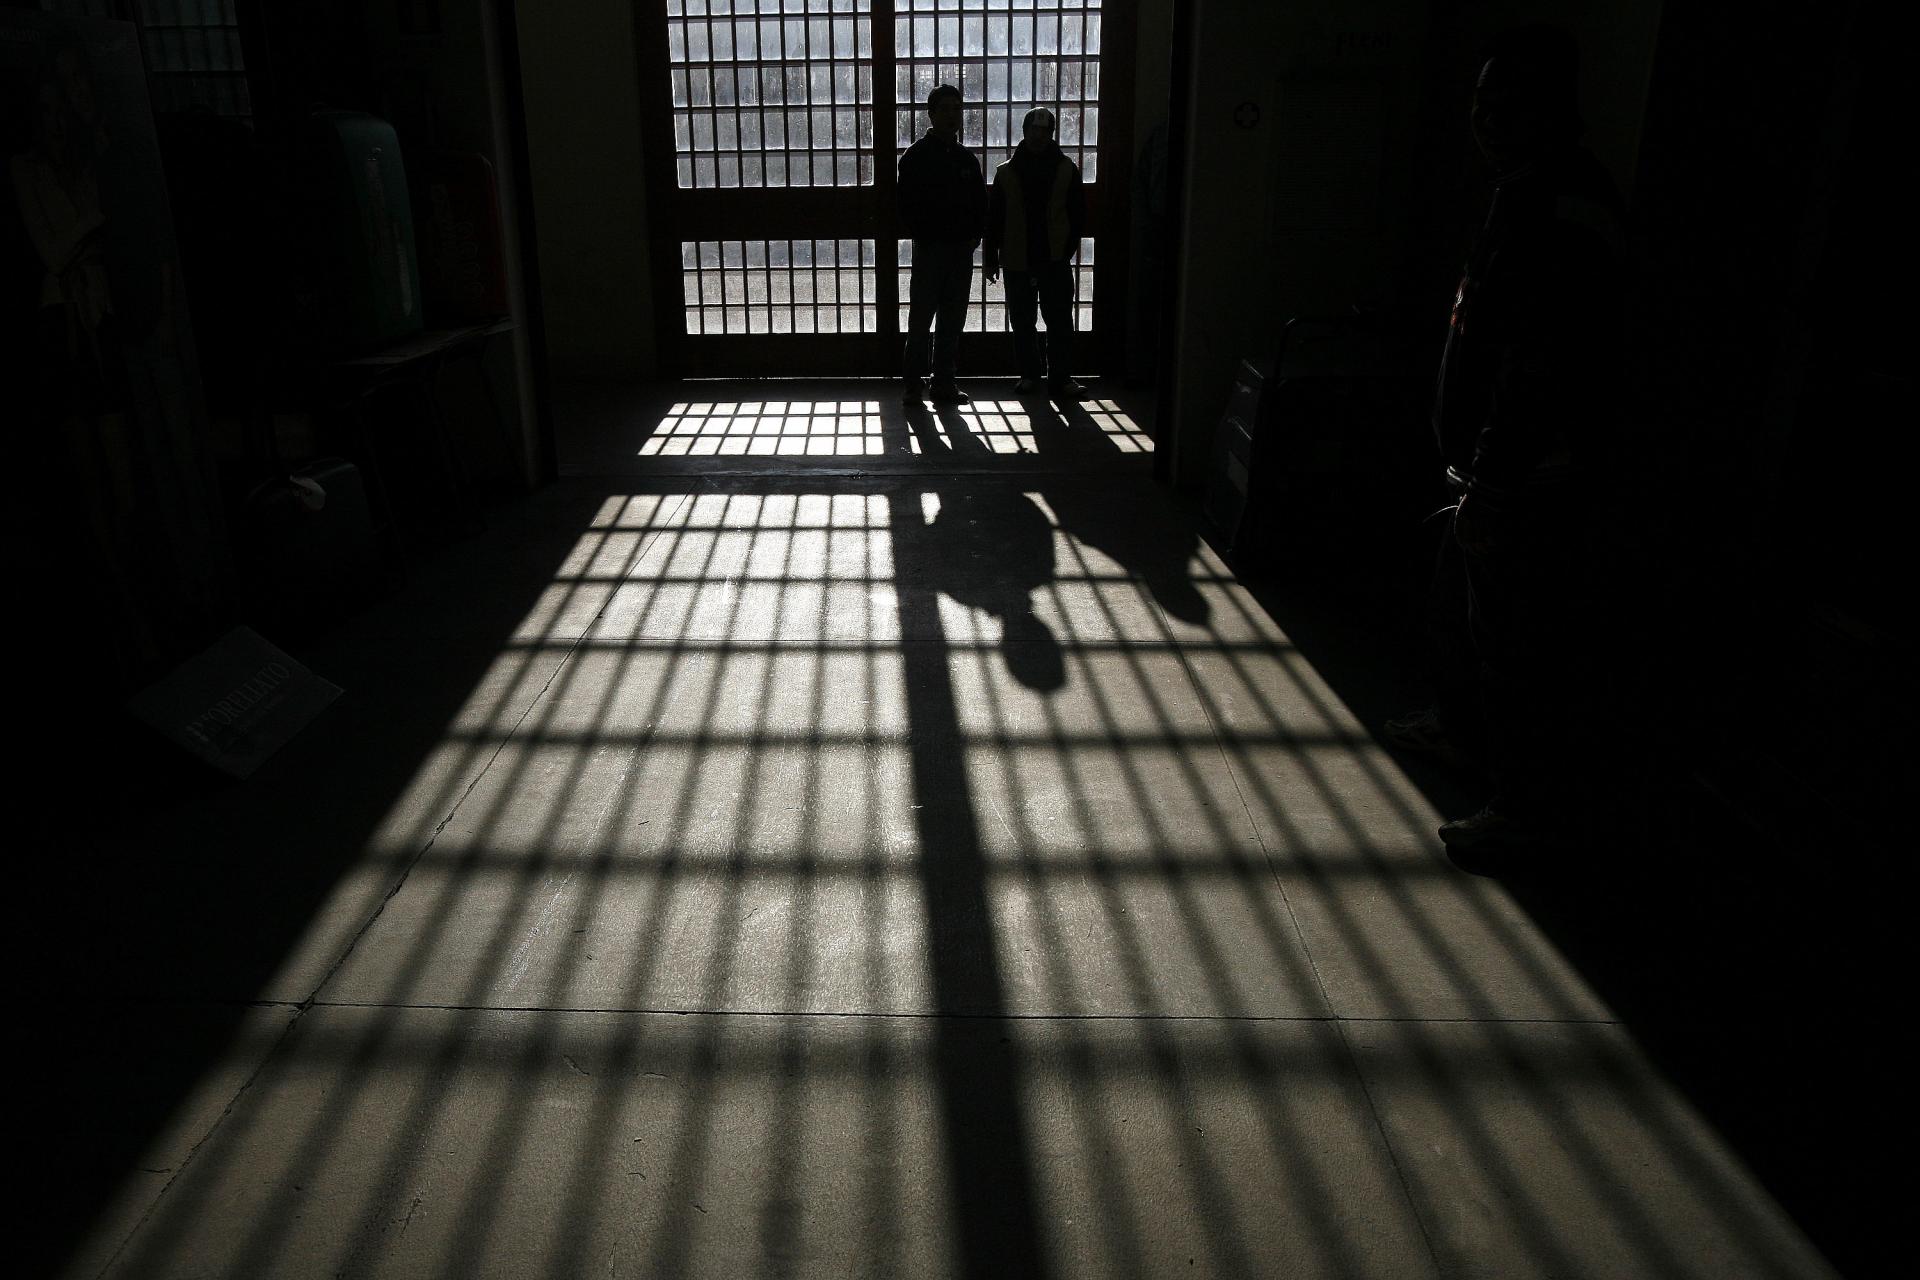 ماہ رمضان کا آغاز،عرب امارات نے 1025 قیدیوں کو عام معافی دے دی